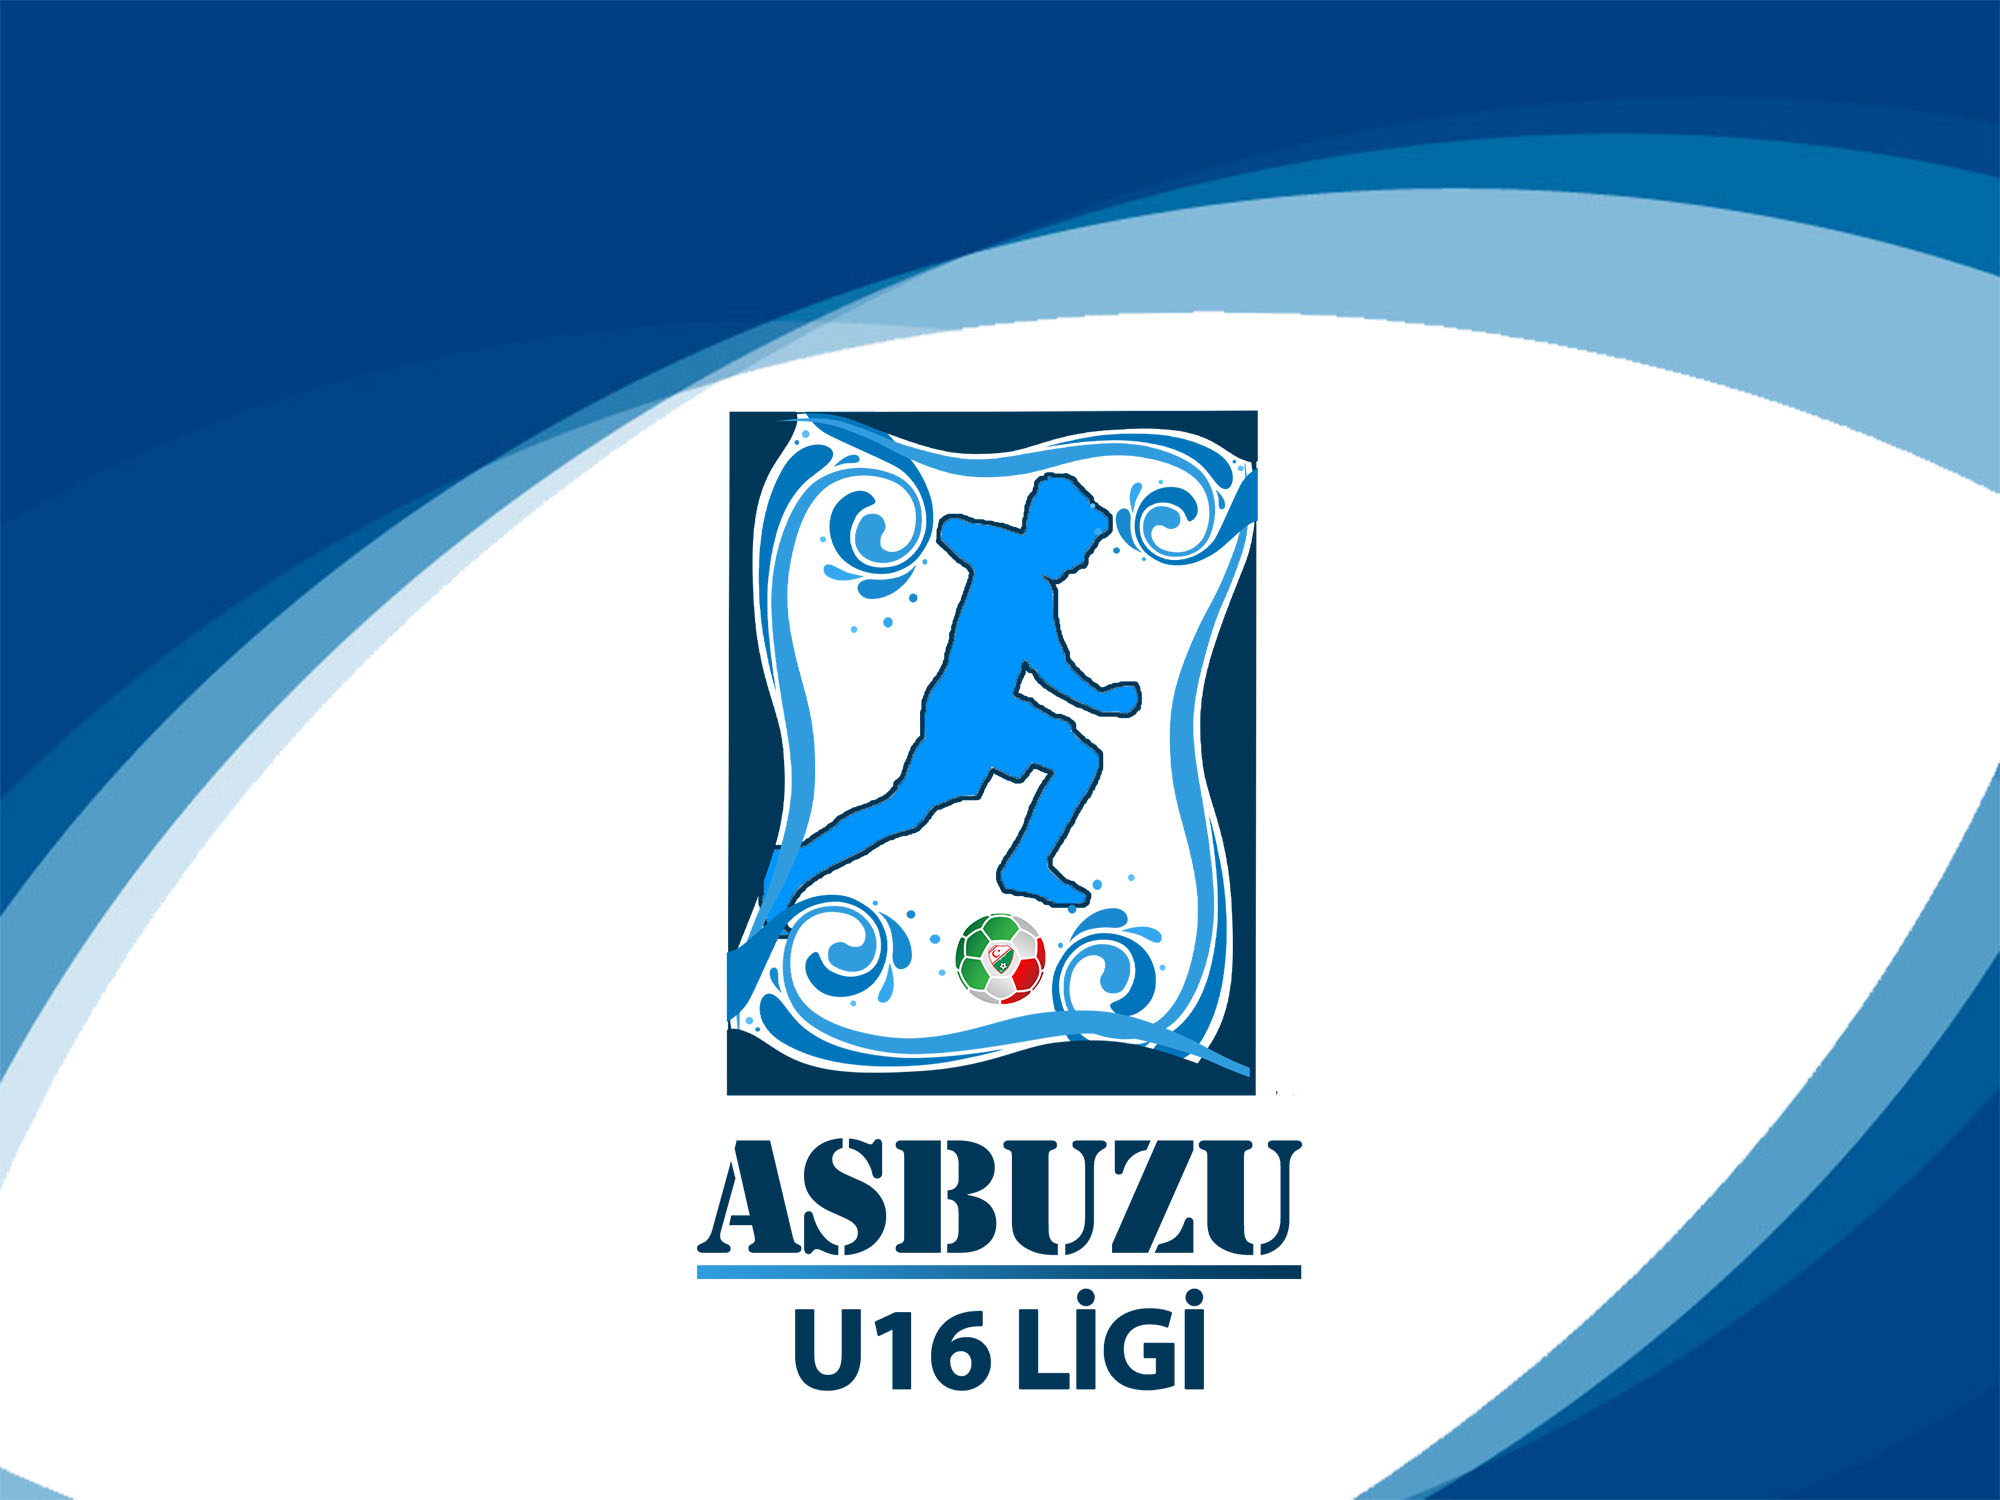 Asbuzu U16 Ligi takımları ile toplantı yapılacak